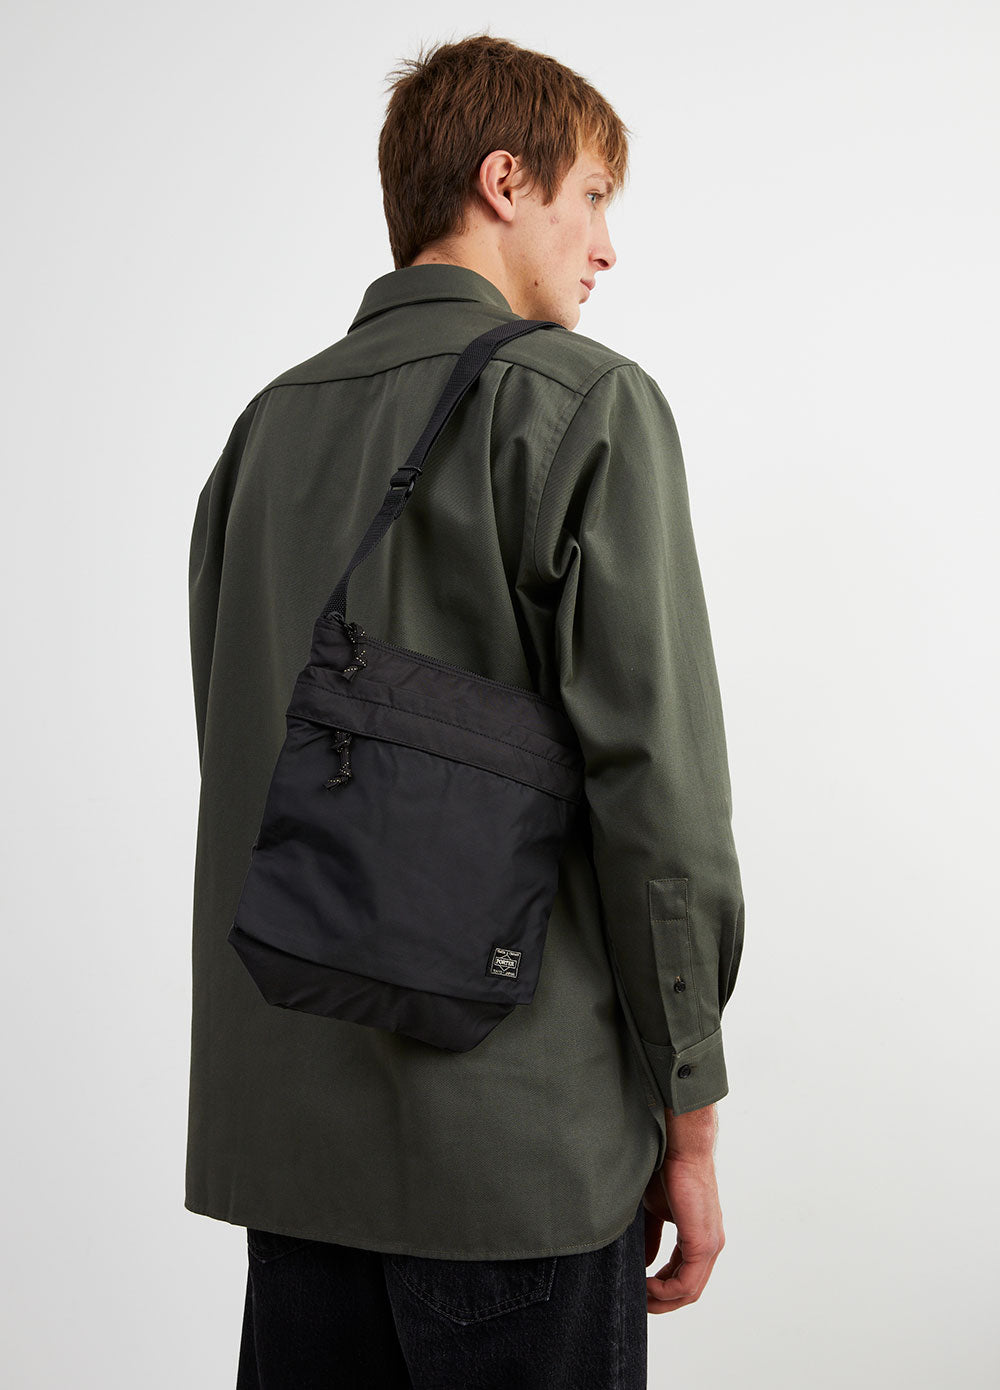 Large Force Shoulder Bag